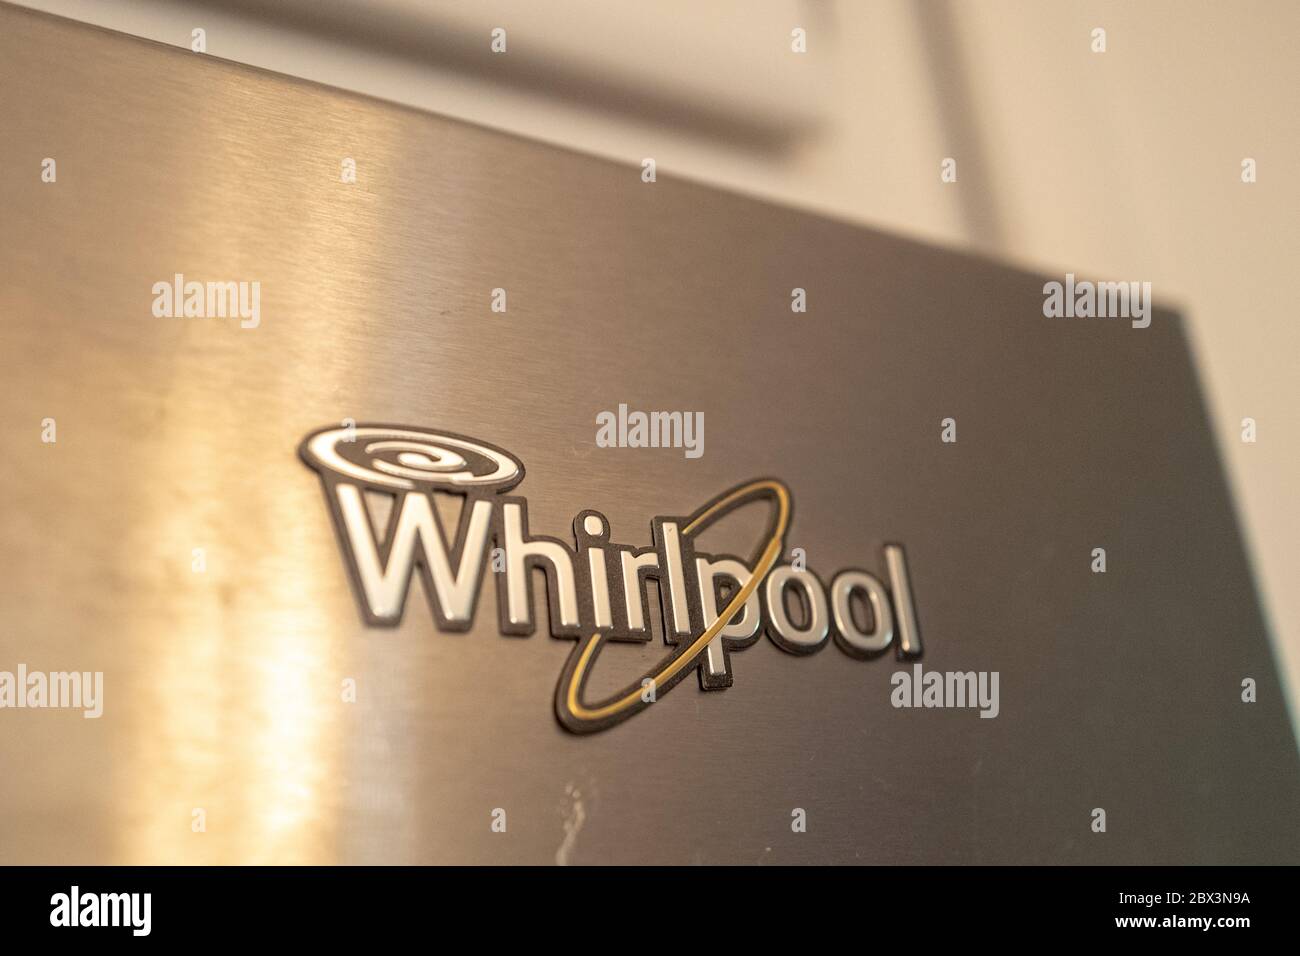 Primo piano del logo per elettrodomestici Whirlpool su superficie in acciaio inox, San Ramon, California, 27 maggio 2020. () Foto Stock